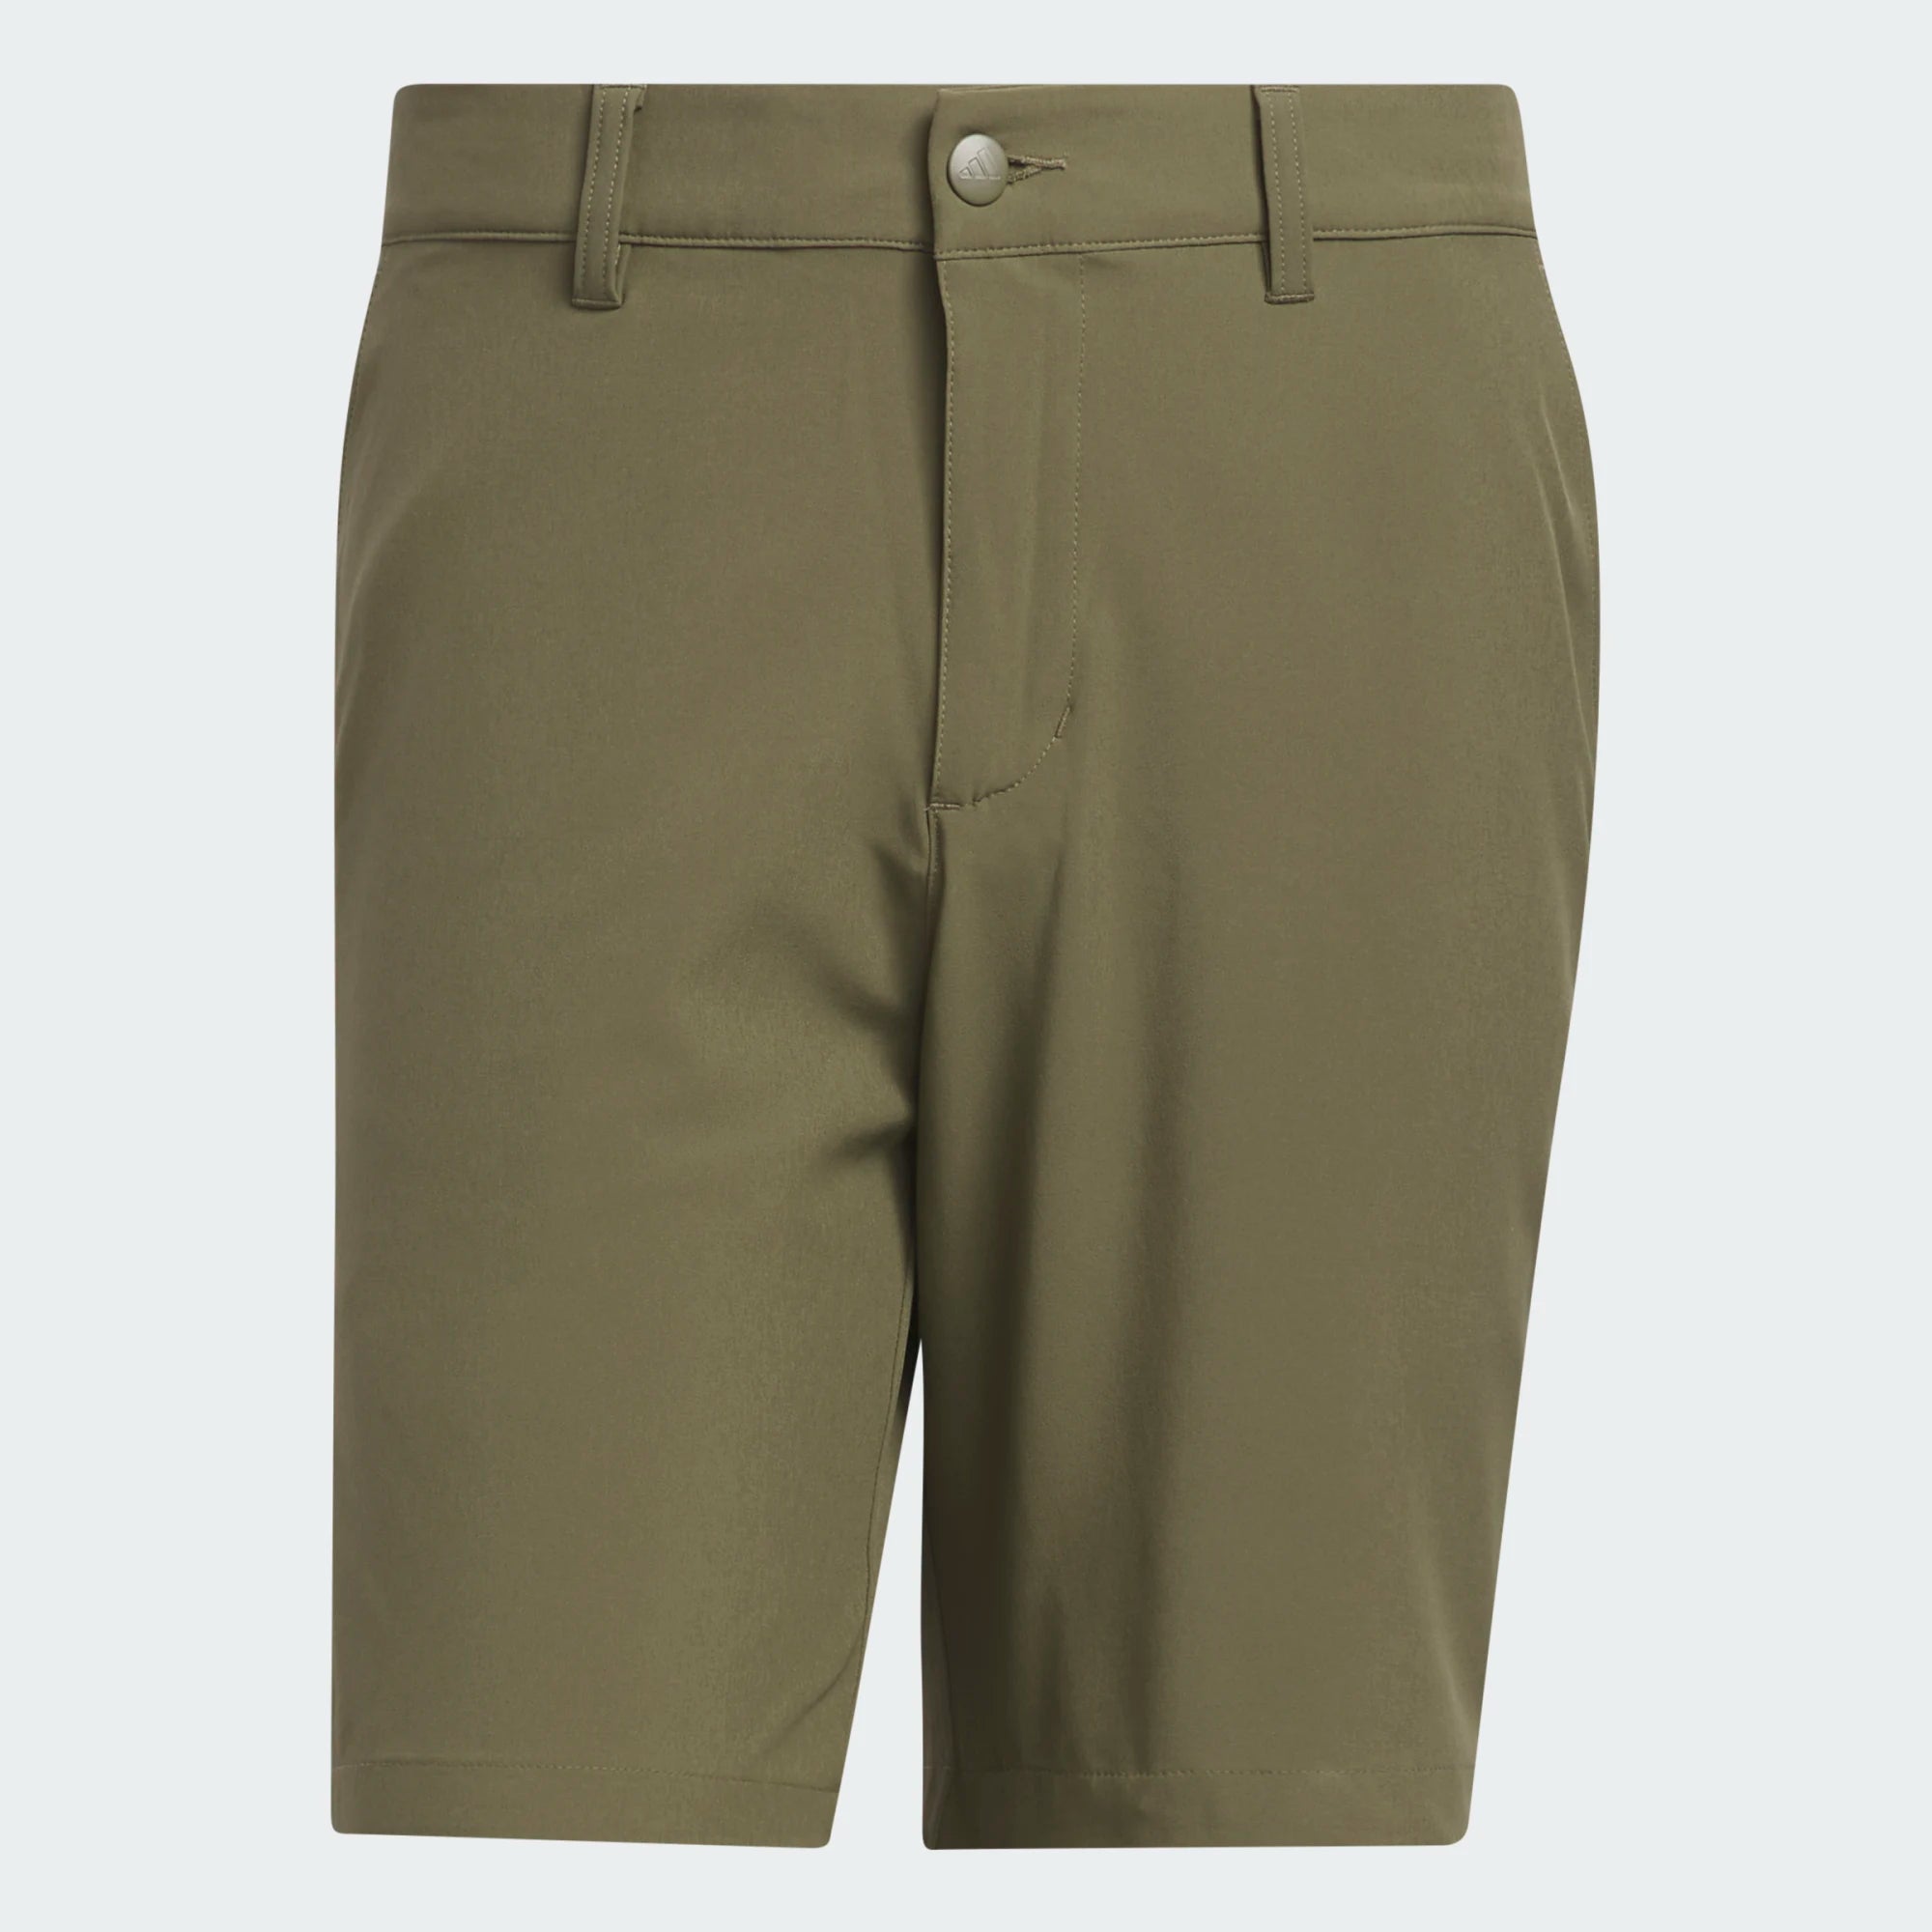 adidas Ultimate365 Shorts de golf de 8.5 pulgadas PANTALONES CORTOS ADIDAS PARA HOMBRE adidas